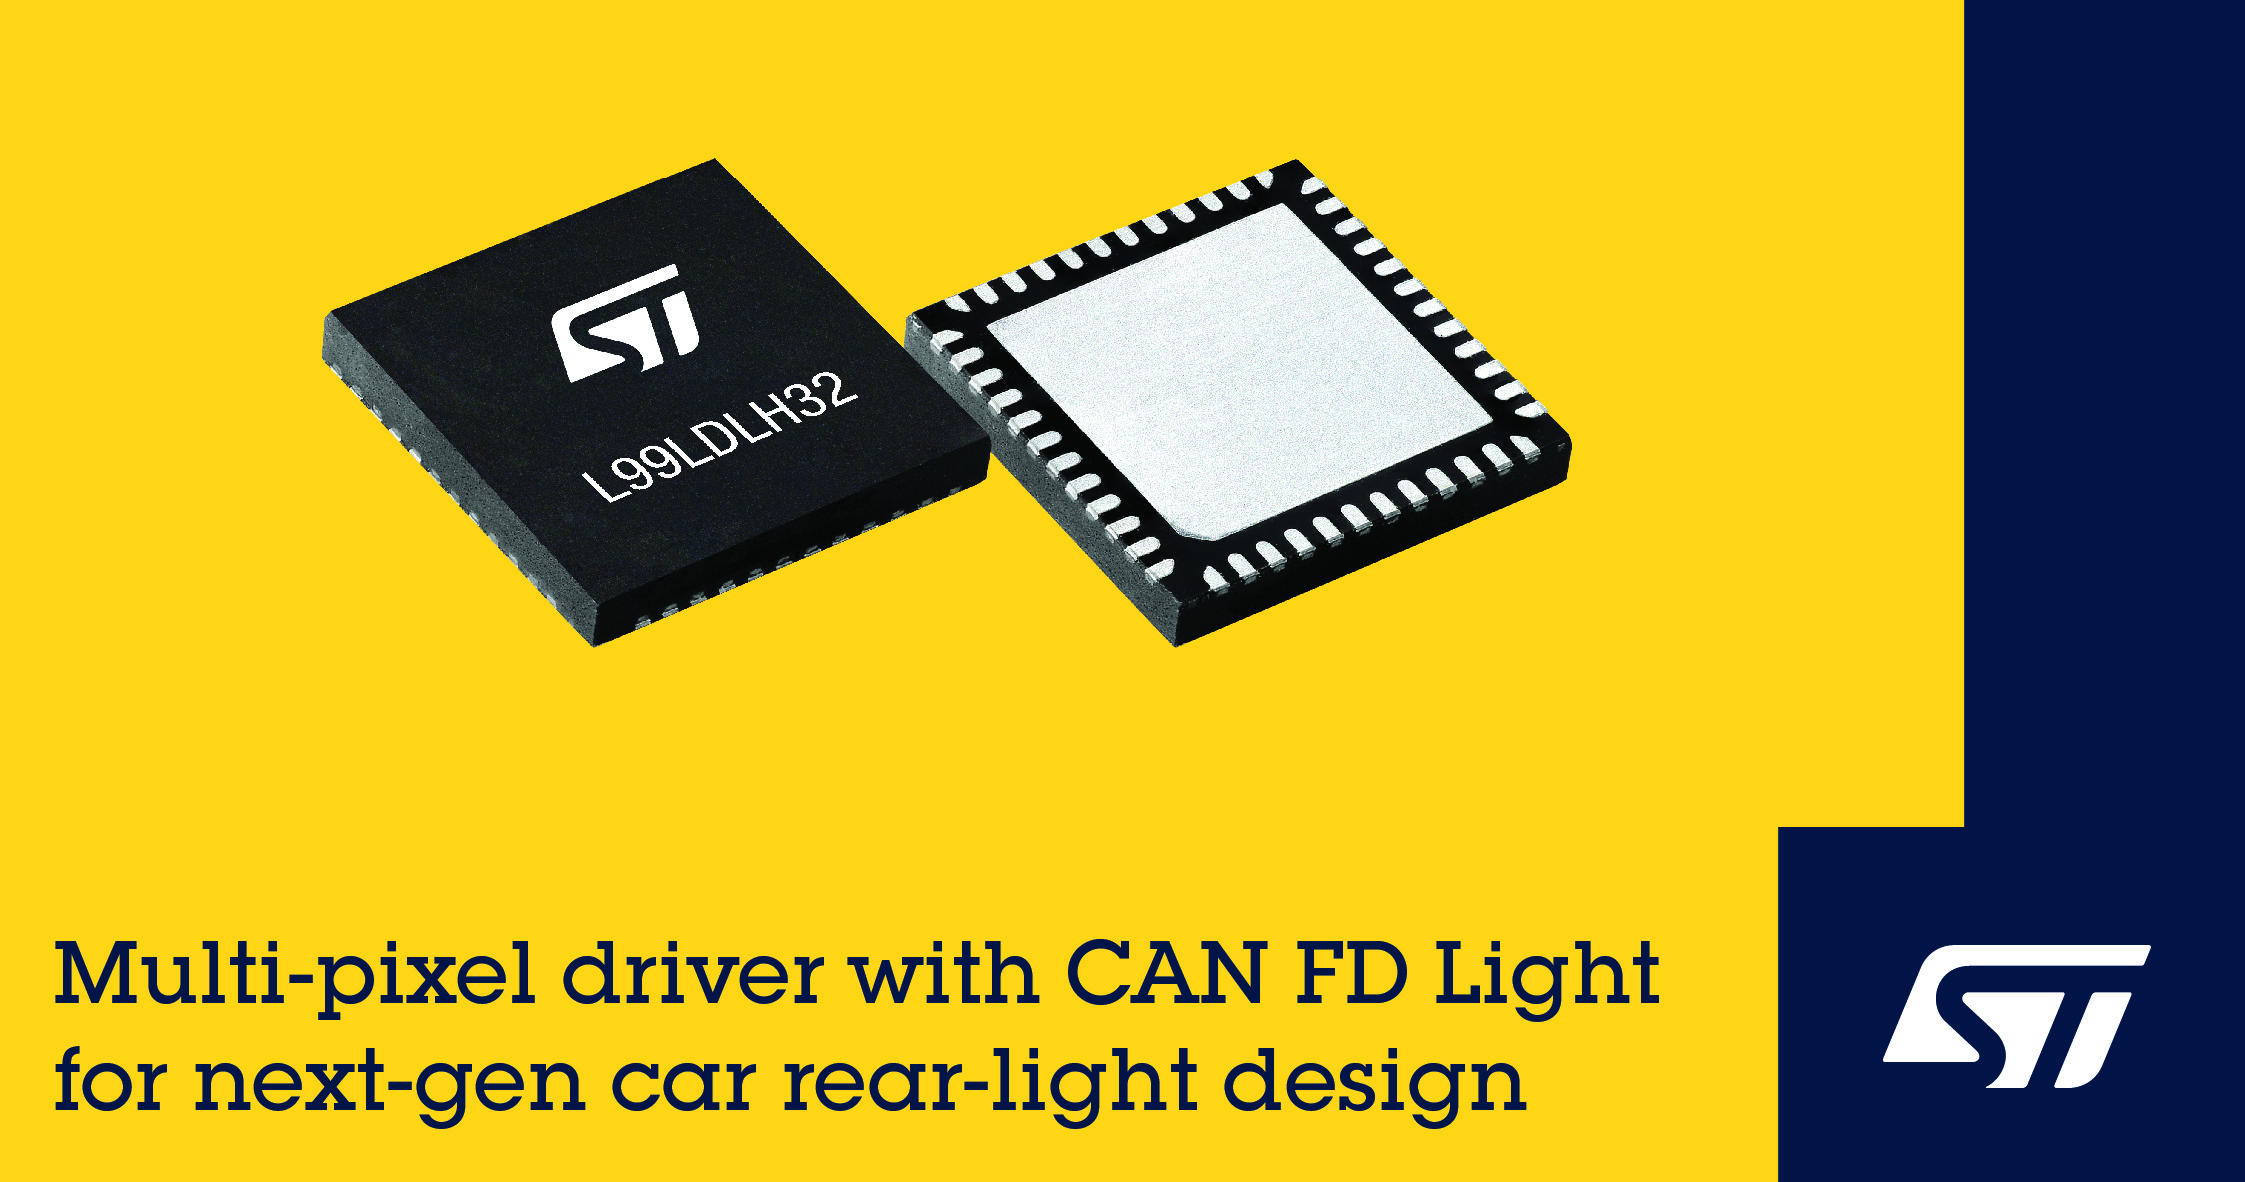 意法半導體CAN FD Light多像素驅動器助力下一代汽車照明設計